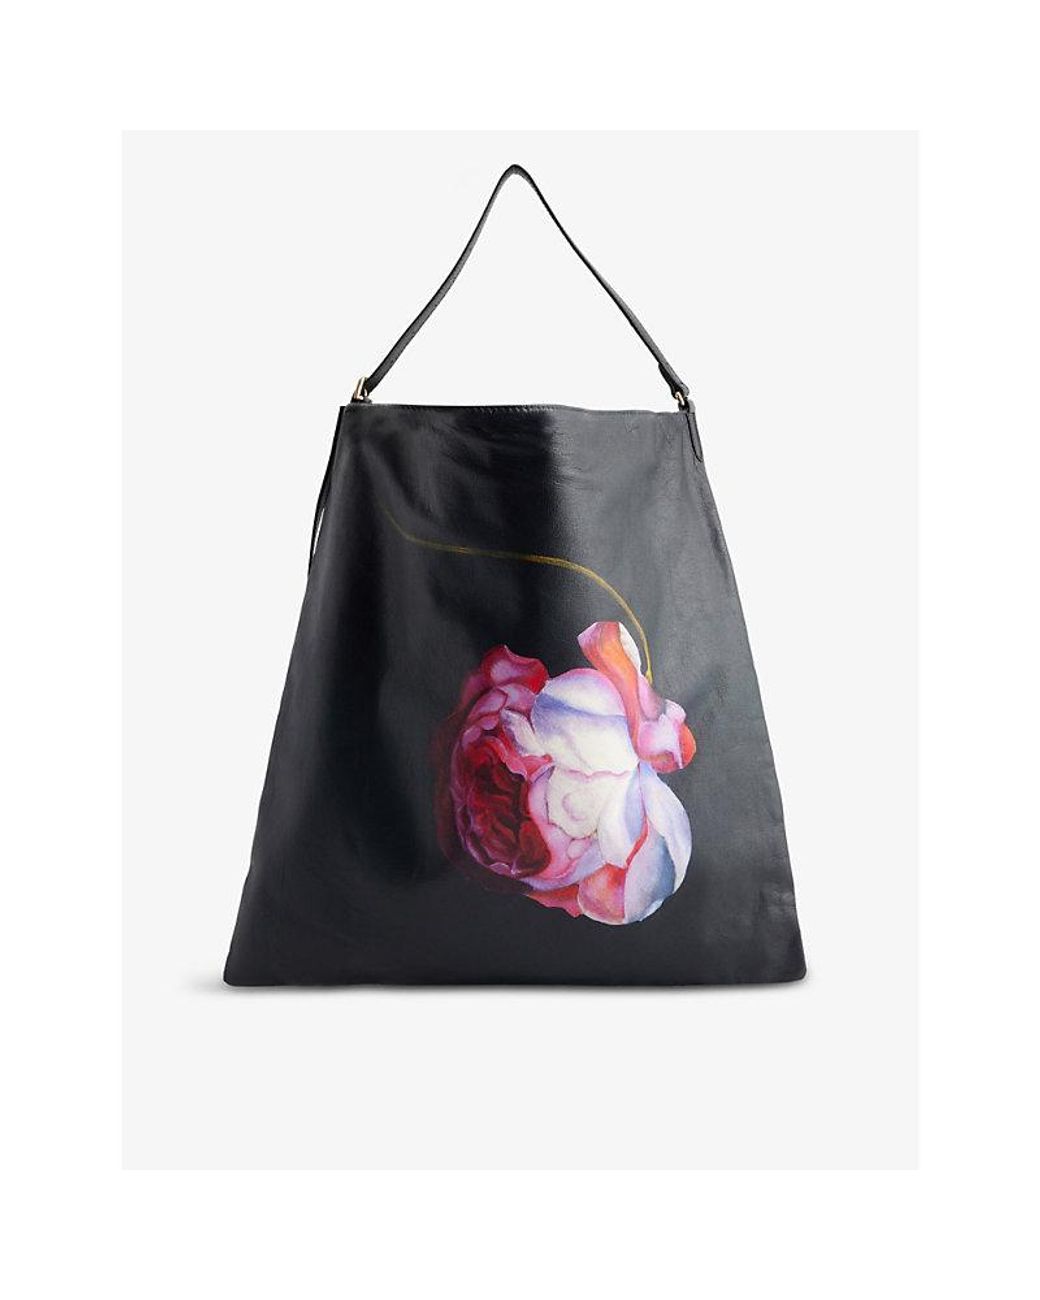 Dries Van Noten Flower-print Square Leather Tote Bag in Black | Lyst